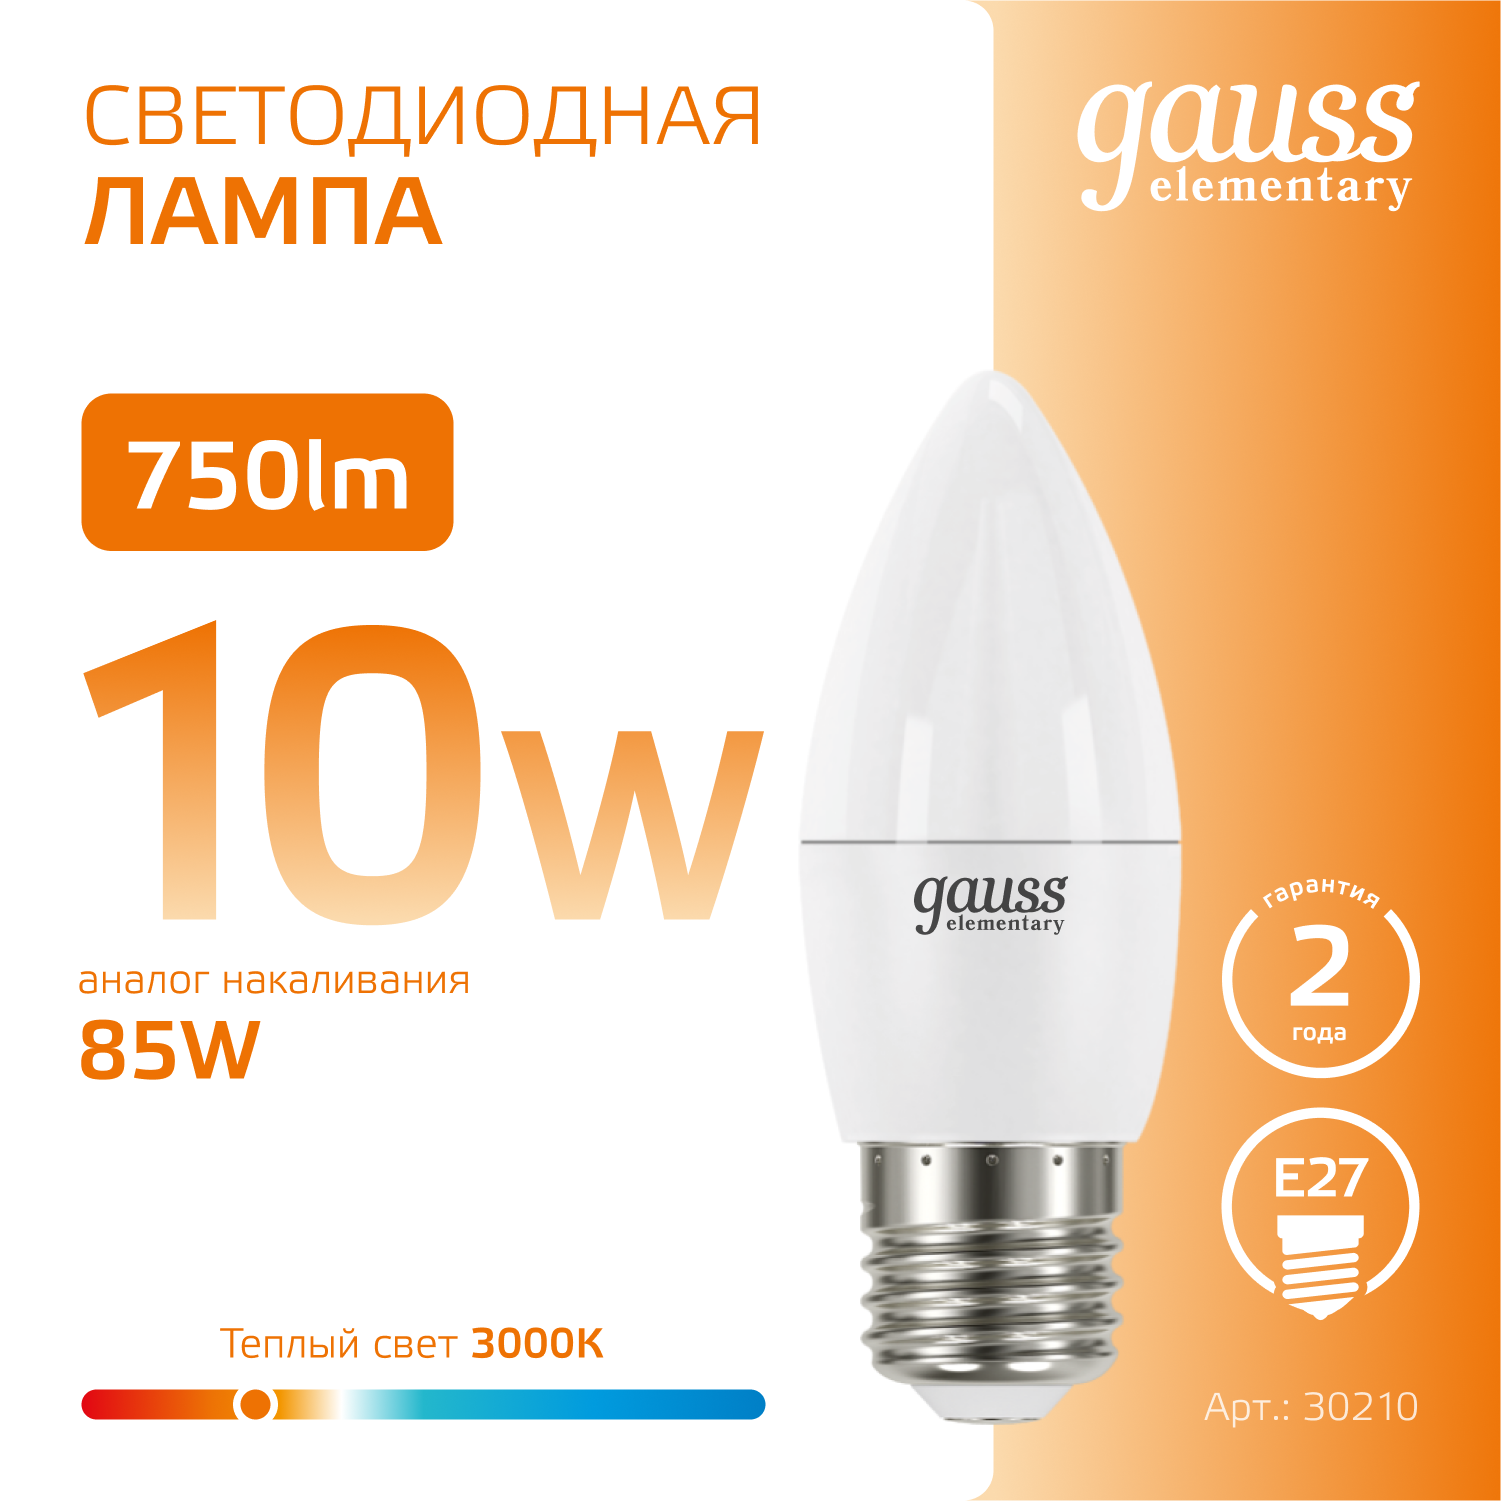 Лампочка светодиодная E27 Свеча 10W теплый свет 3000К упаковка 10 шт. Gauss Elementary